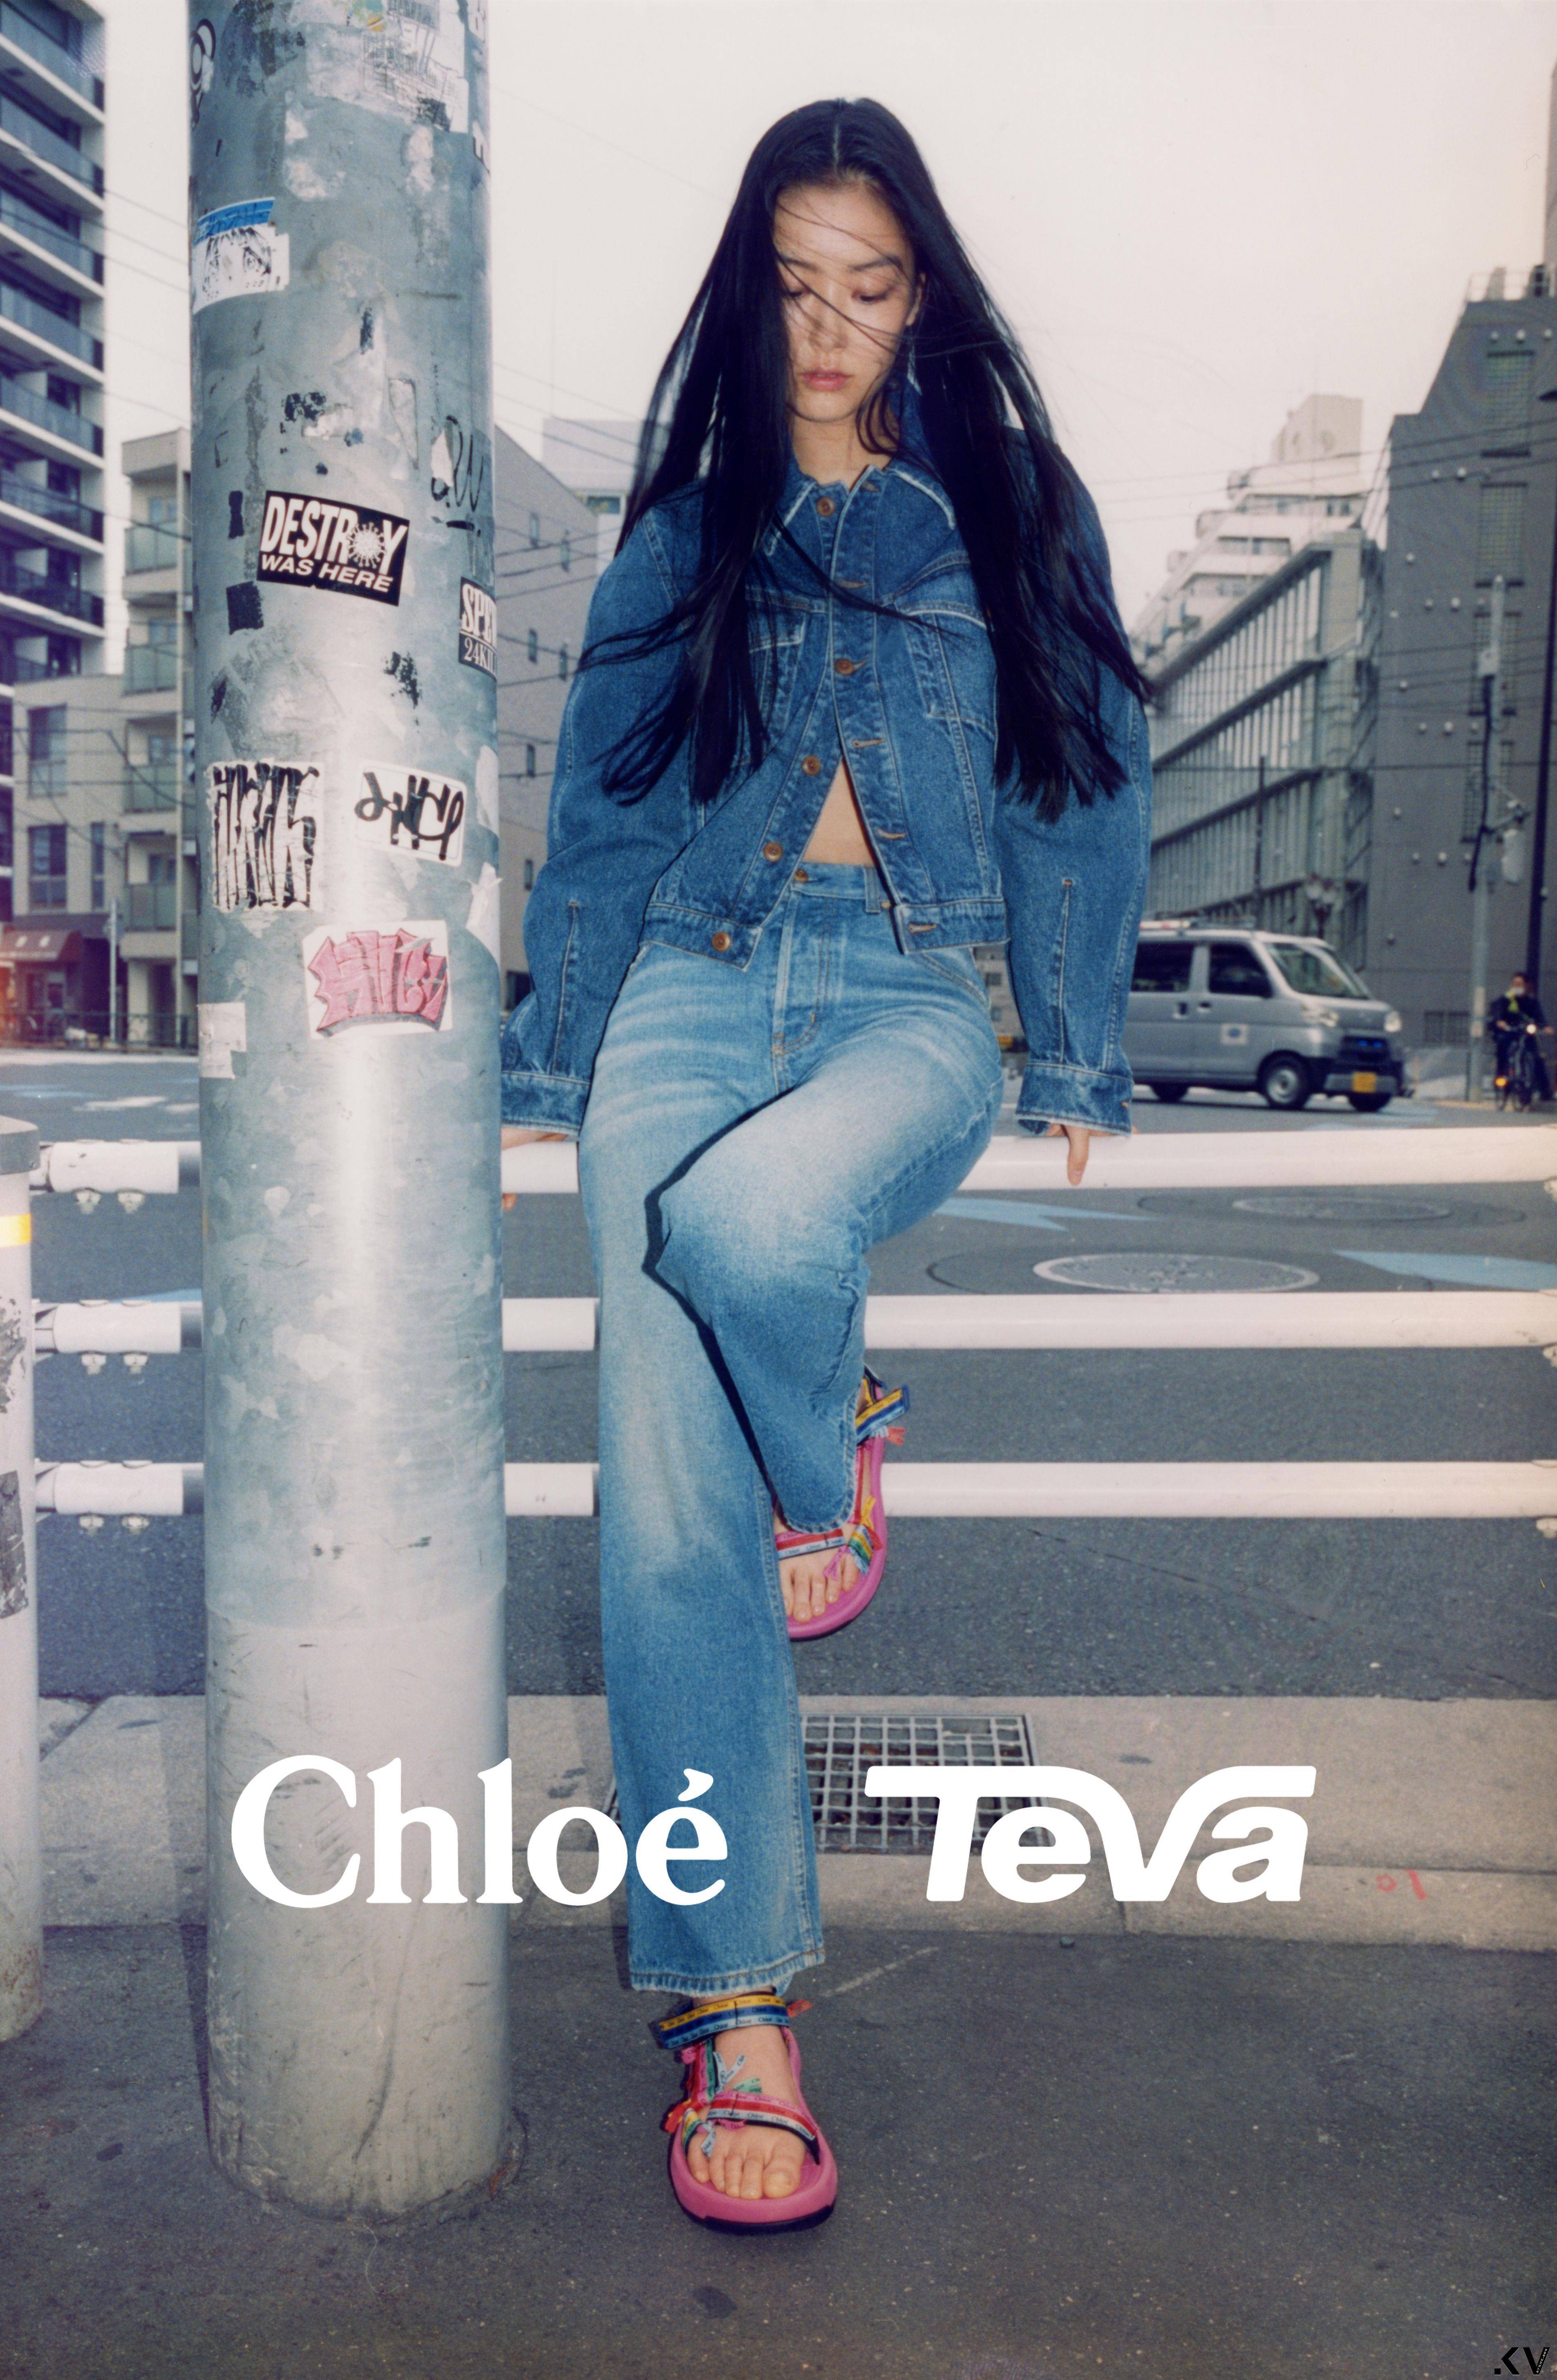 今夏最美凉鞋Chloé X Teva！　Logo彩色蝴蝶结、天然米色系梦幻上脚 时尚穿搭 图2张